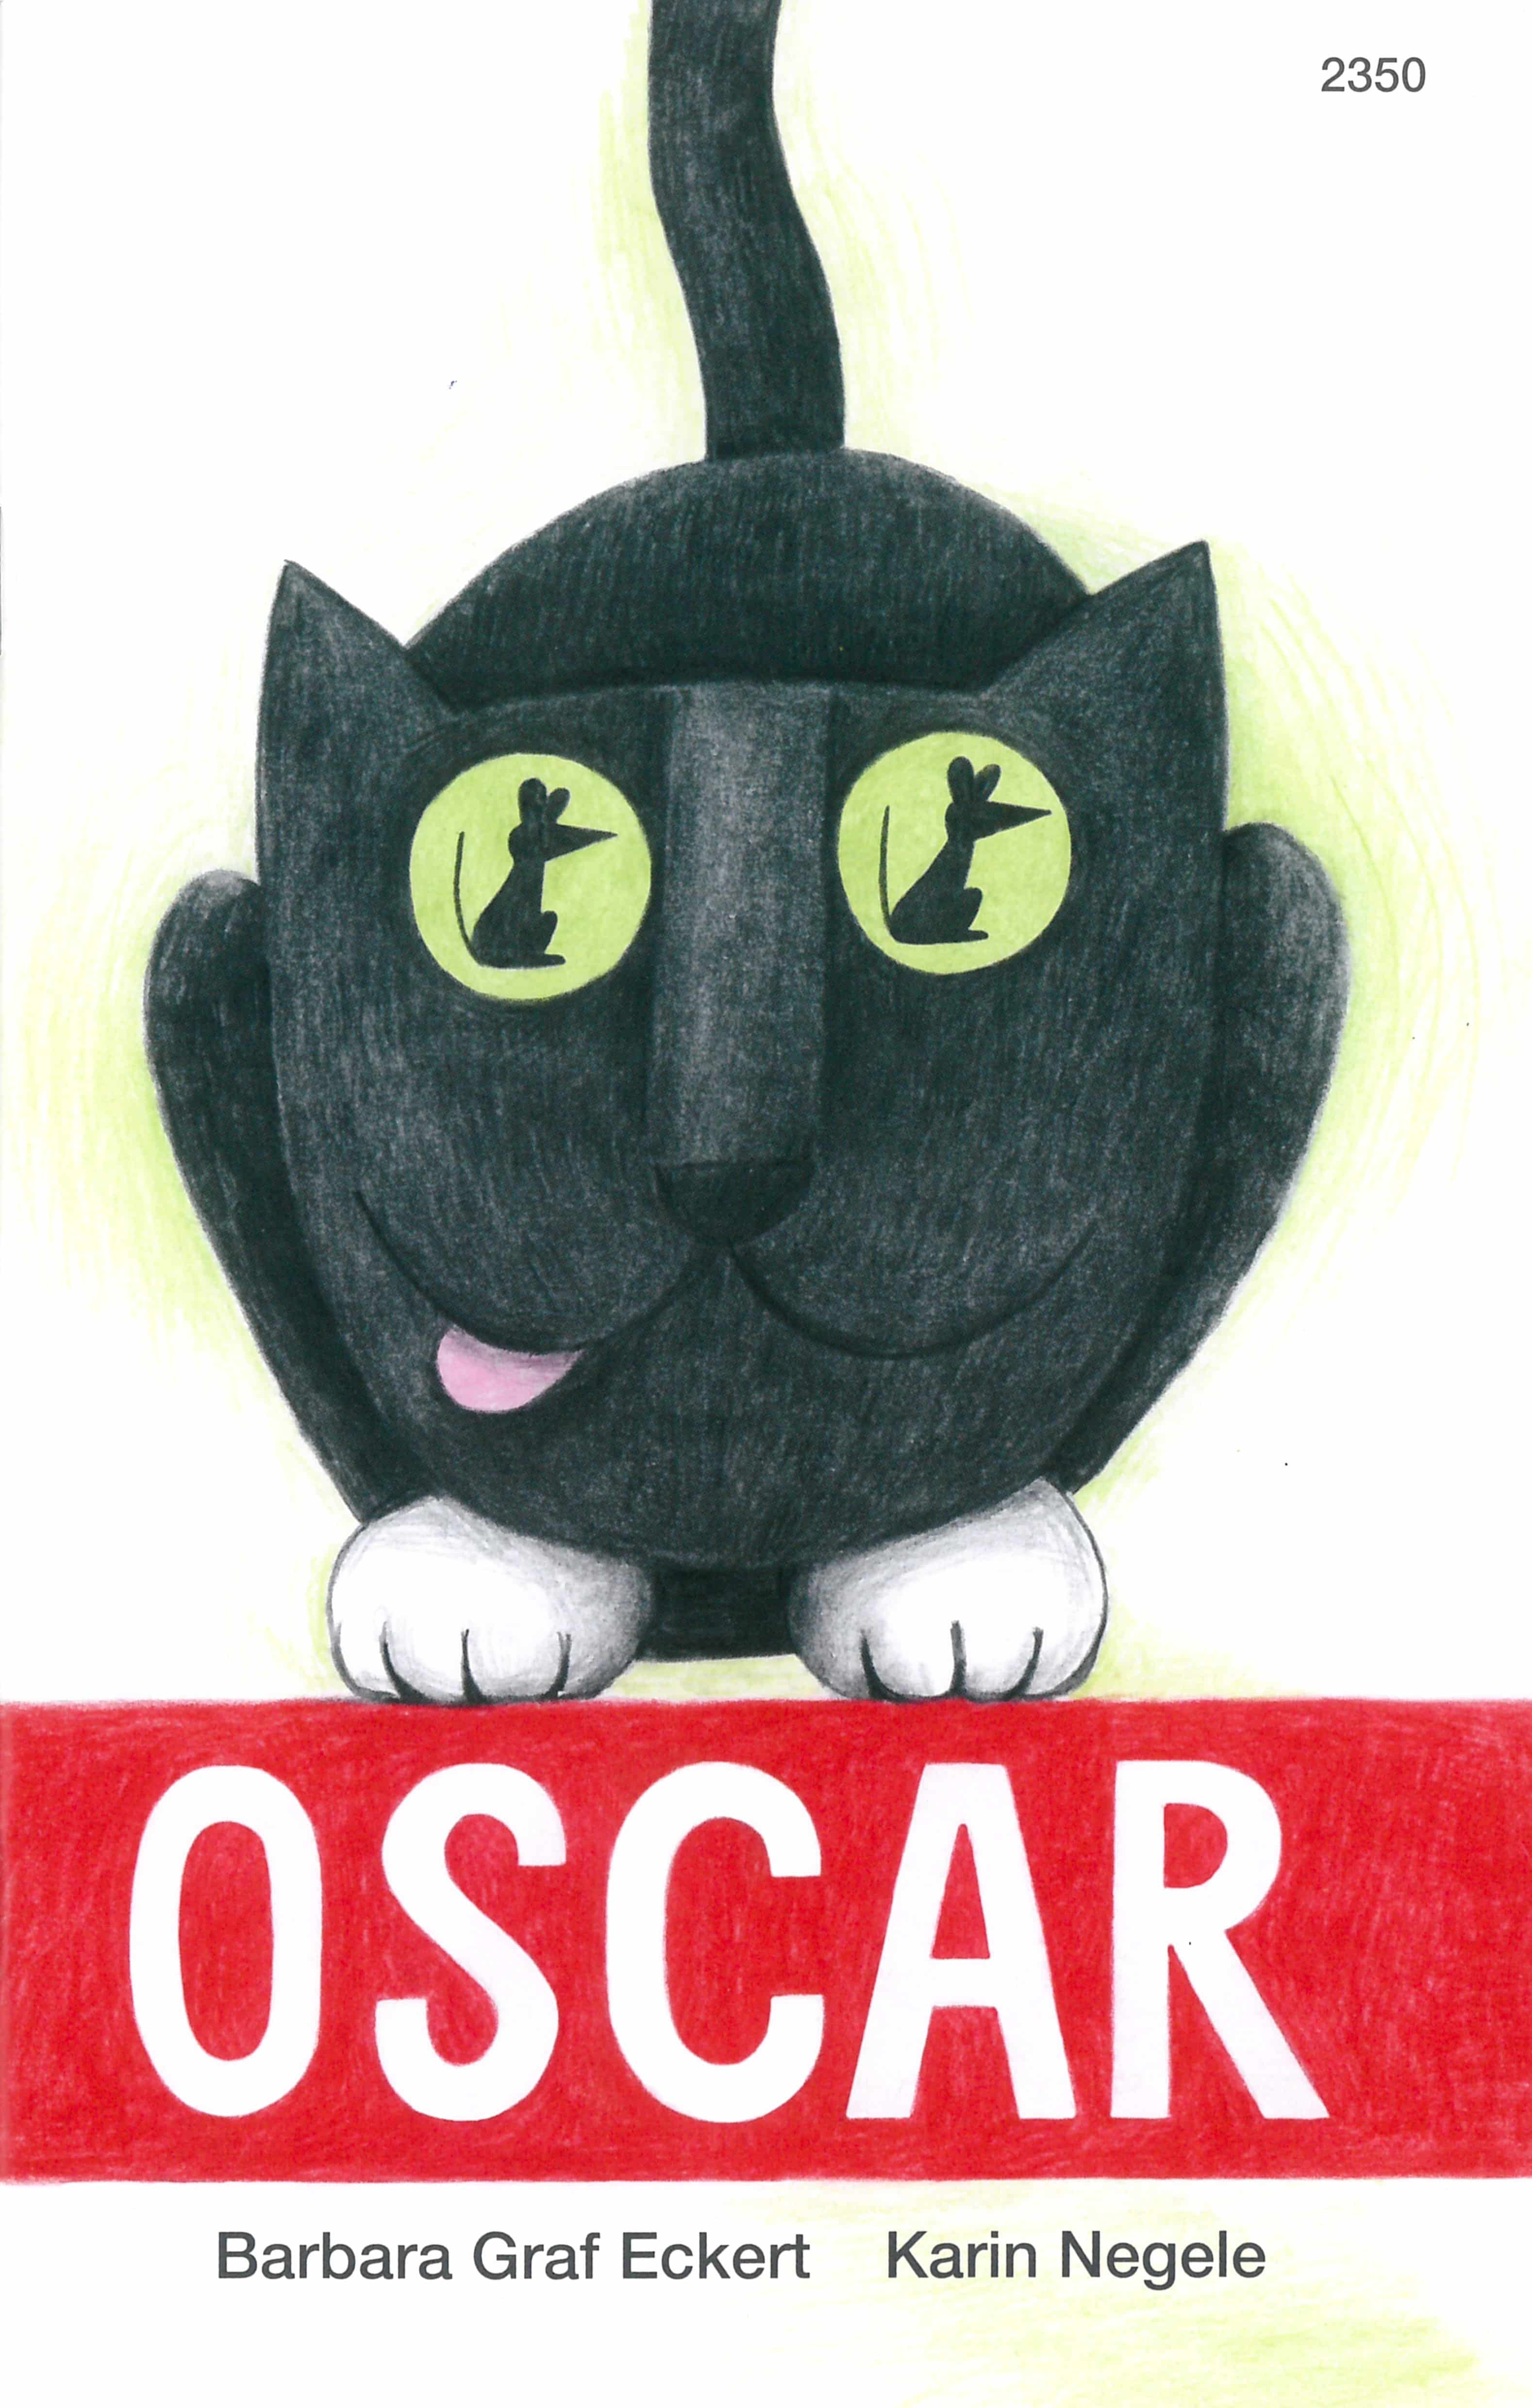 Oscar, ein Kinderbuch von Barbara Graf Eckert, Illustration von Karin Negele, SJW Verlag, Zahlengeschichte